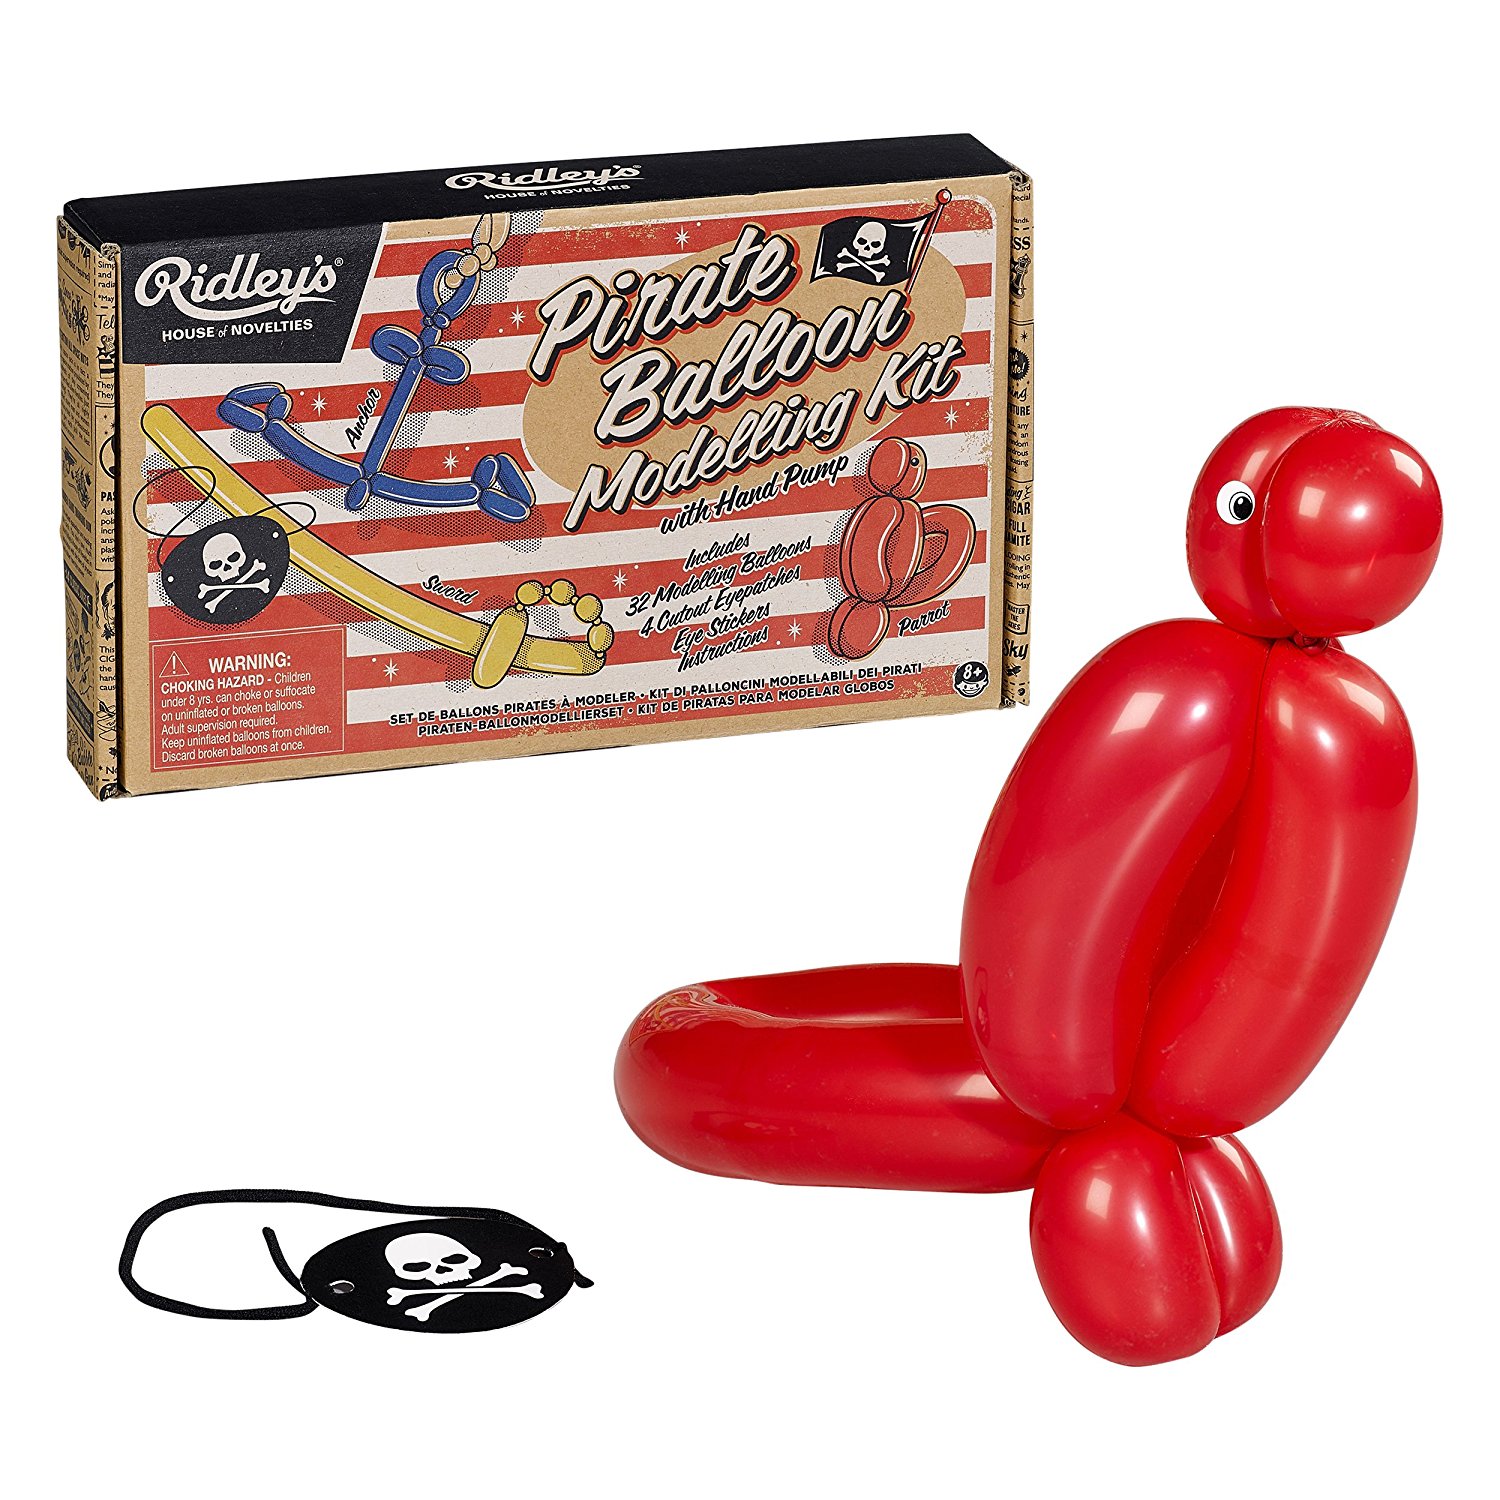 Kit pentru baloane - Pirates ballon modelling | Ridley\'s